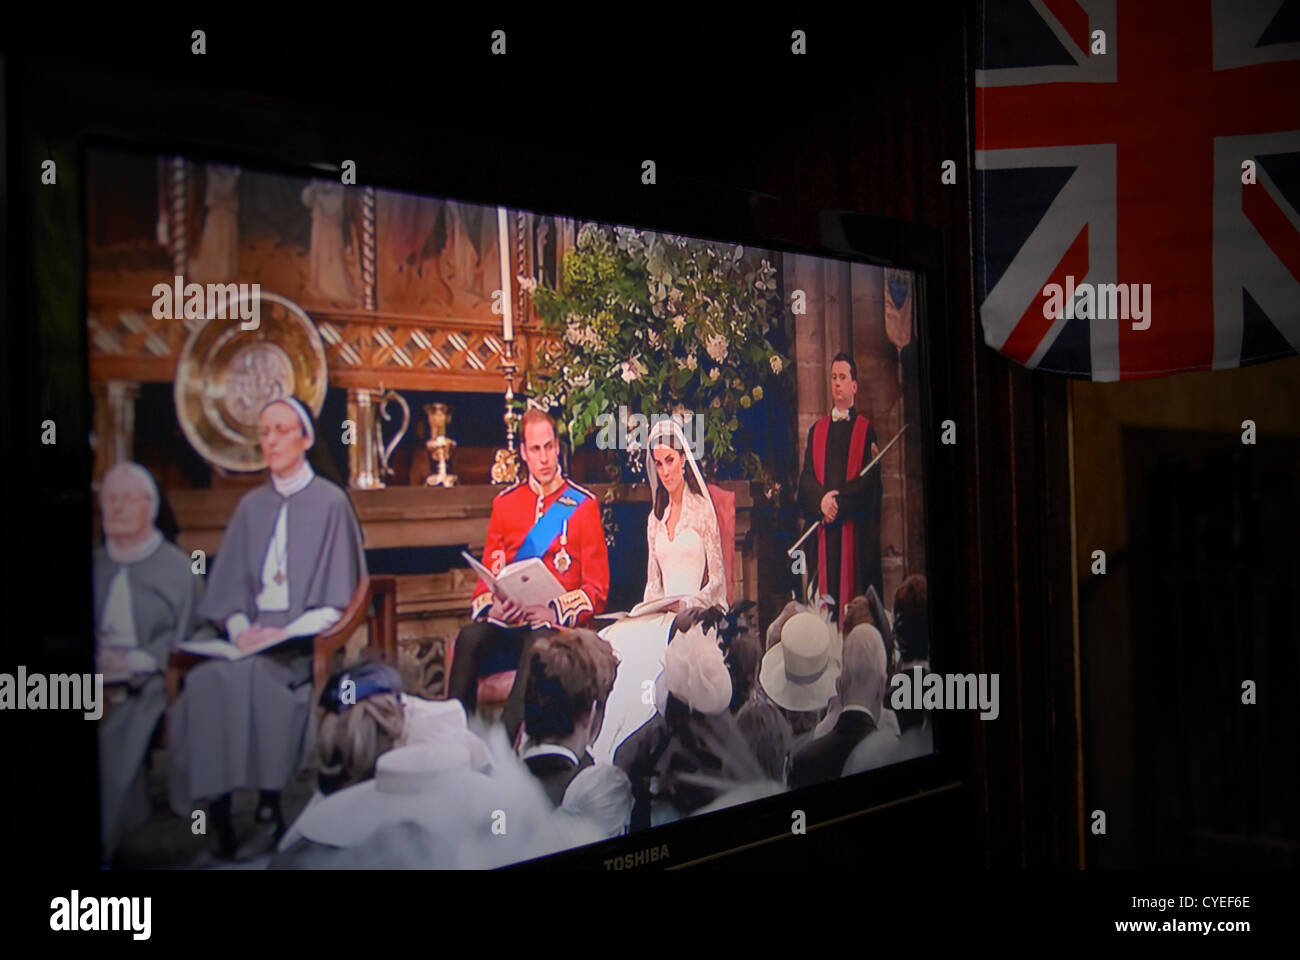 Königliche Hochzeit von Prinz William und Catherine Middleton, Herzog und die Herzogin von Cambridge. Freitag, 29. April 2011. TV / neu zu erfassen. Stockfoto